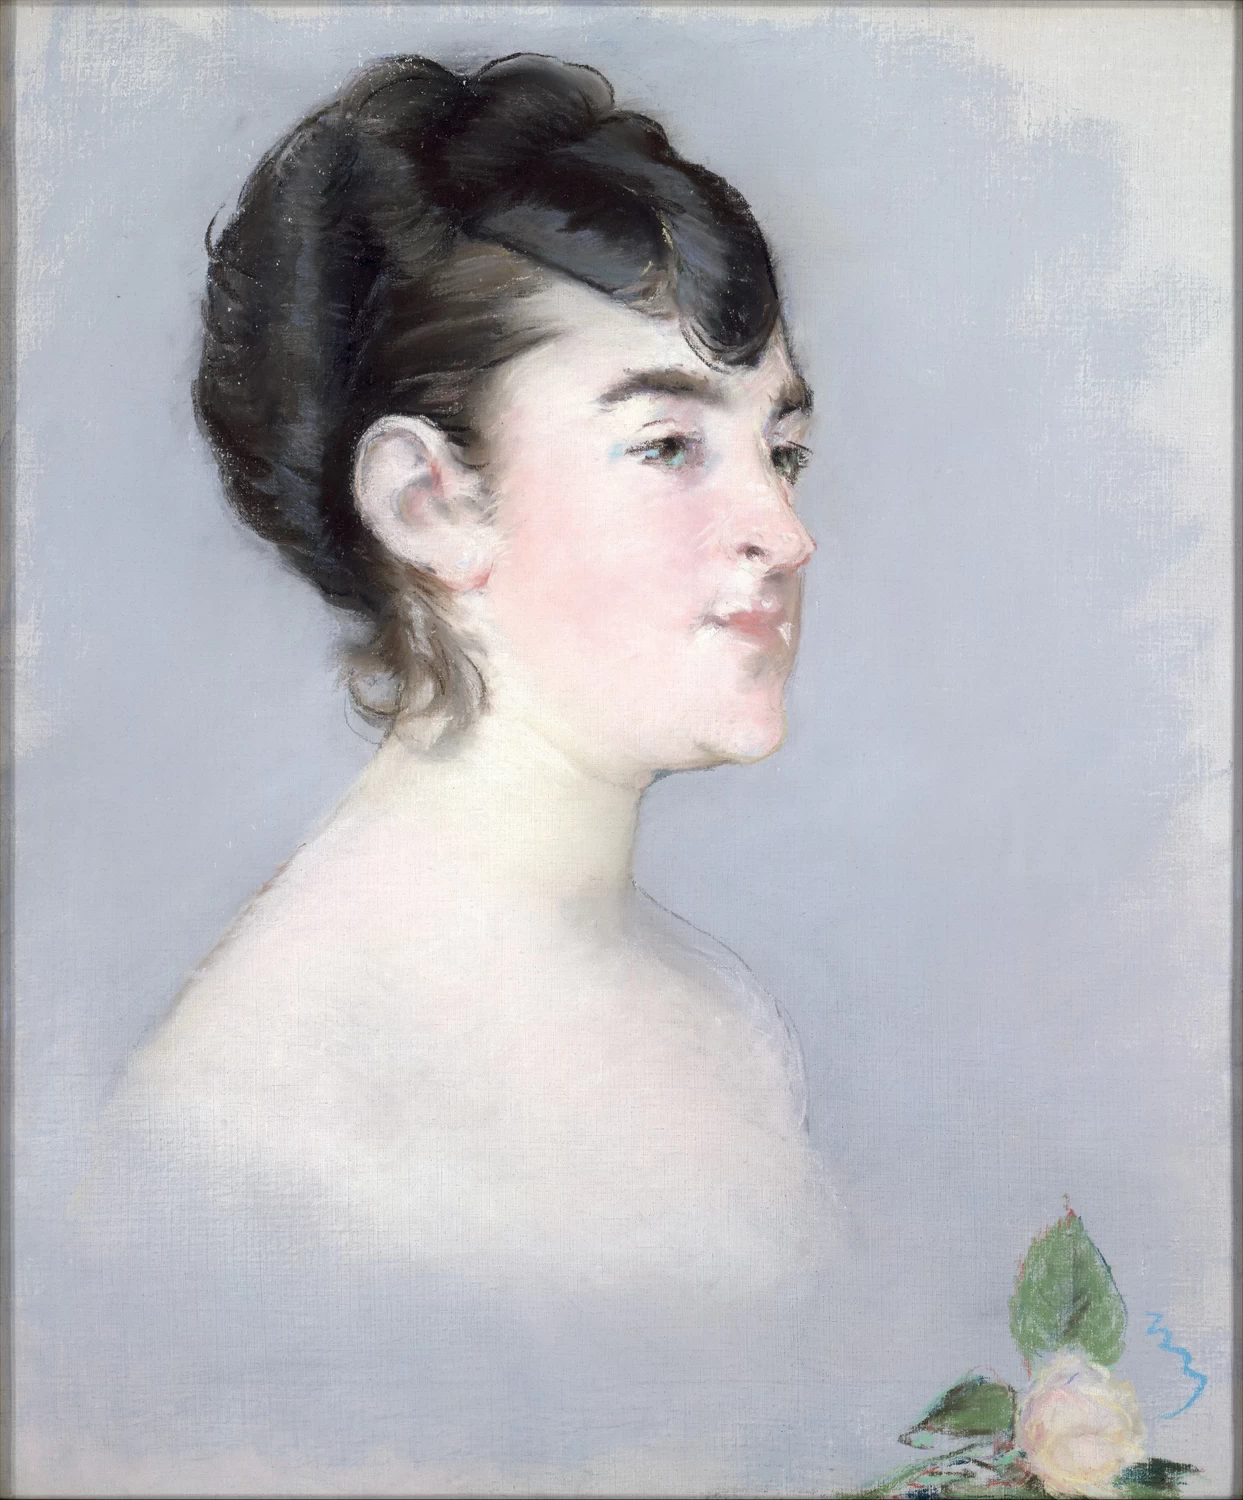  194-Édouard Manet, La Signorina Isabelle Lemonnier, 1879-82-Metropolitan Museum of Art, New York 